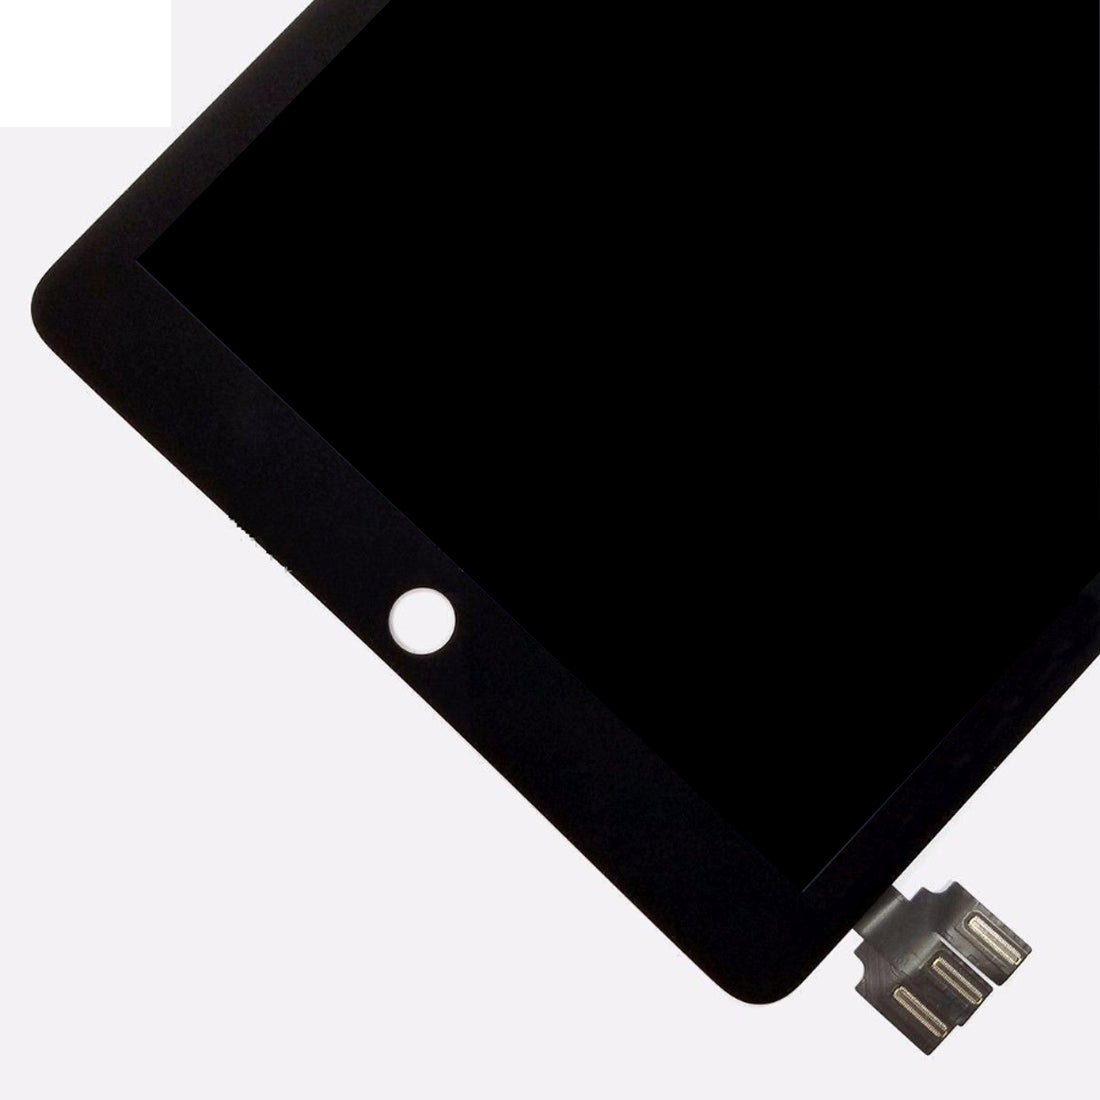 Ecran LCD + Numériseur Tactile Apple iPad Pro 9.7 A1673 A1674 A1675 Noir